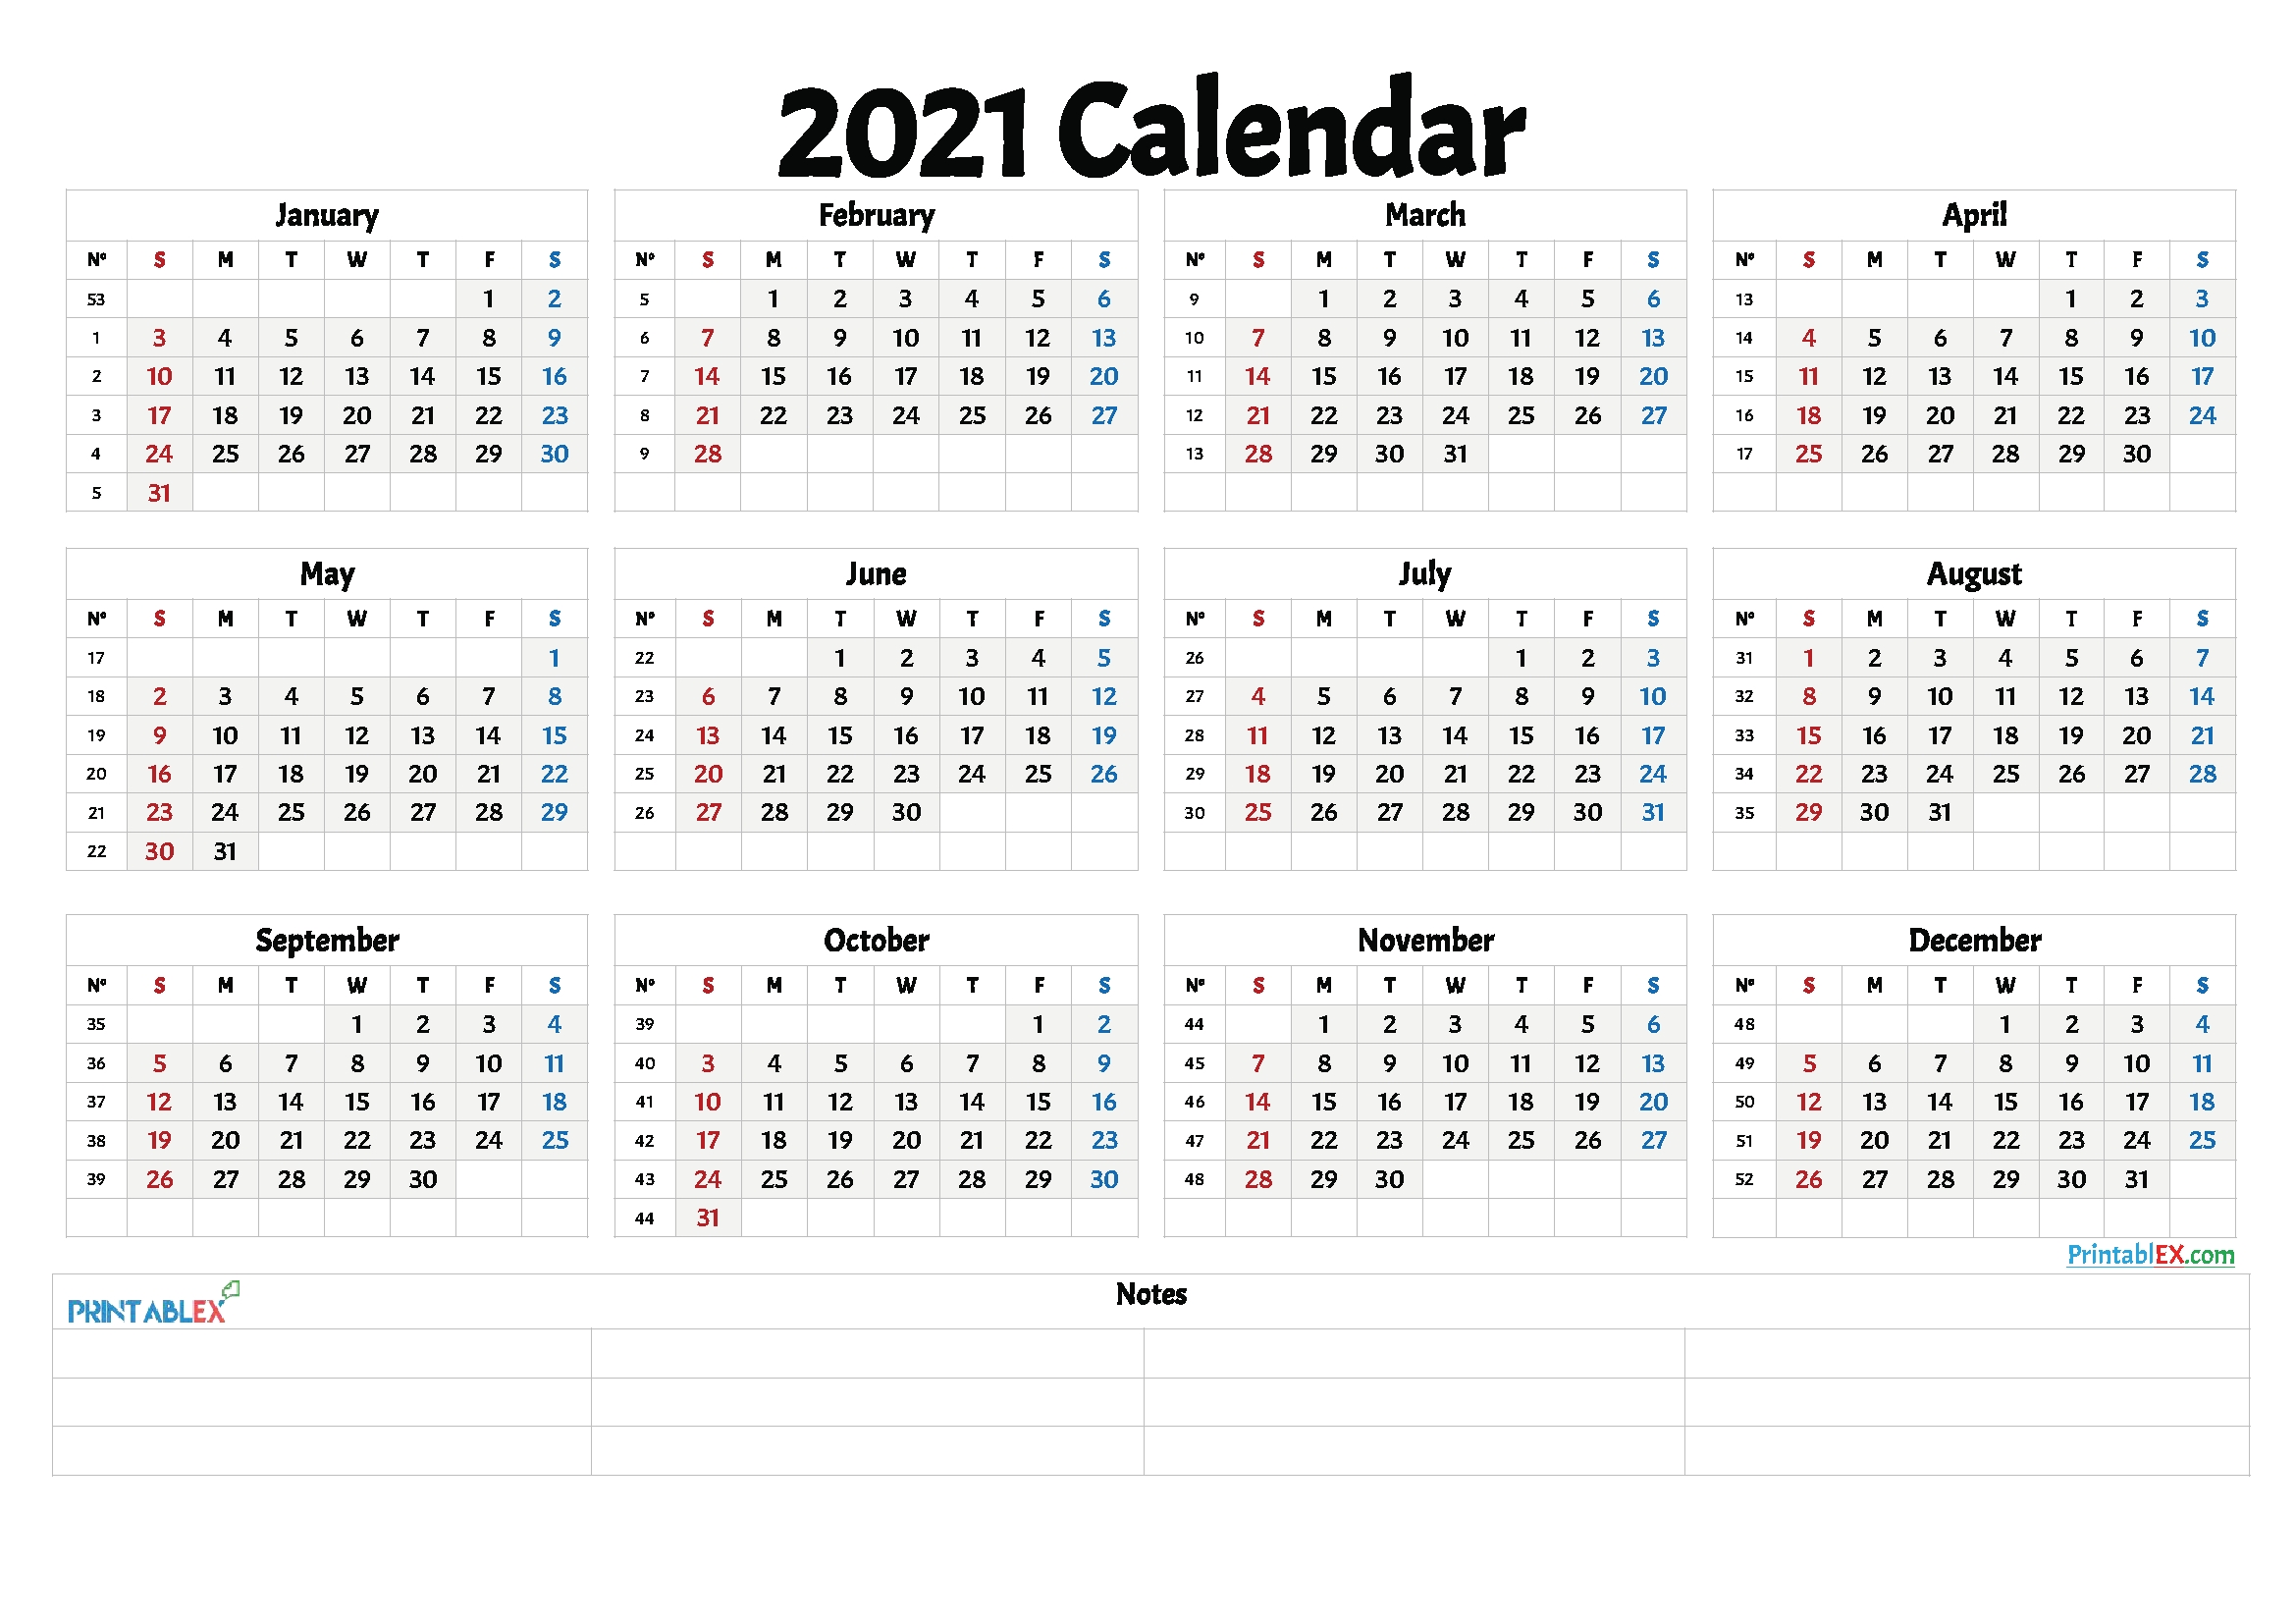 2021 calendar by week number